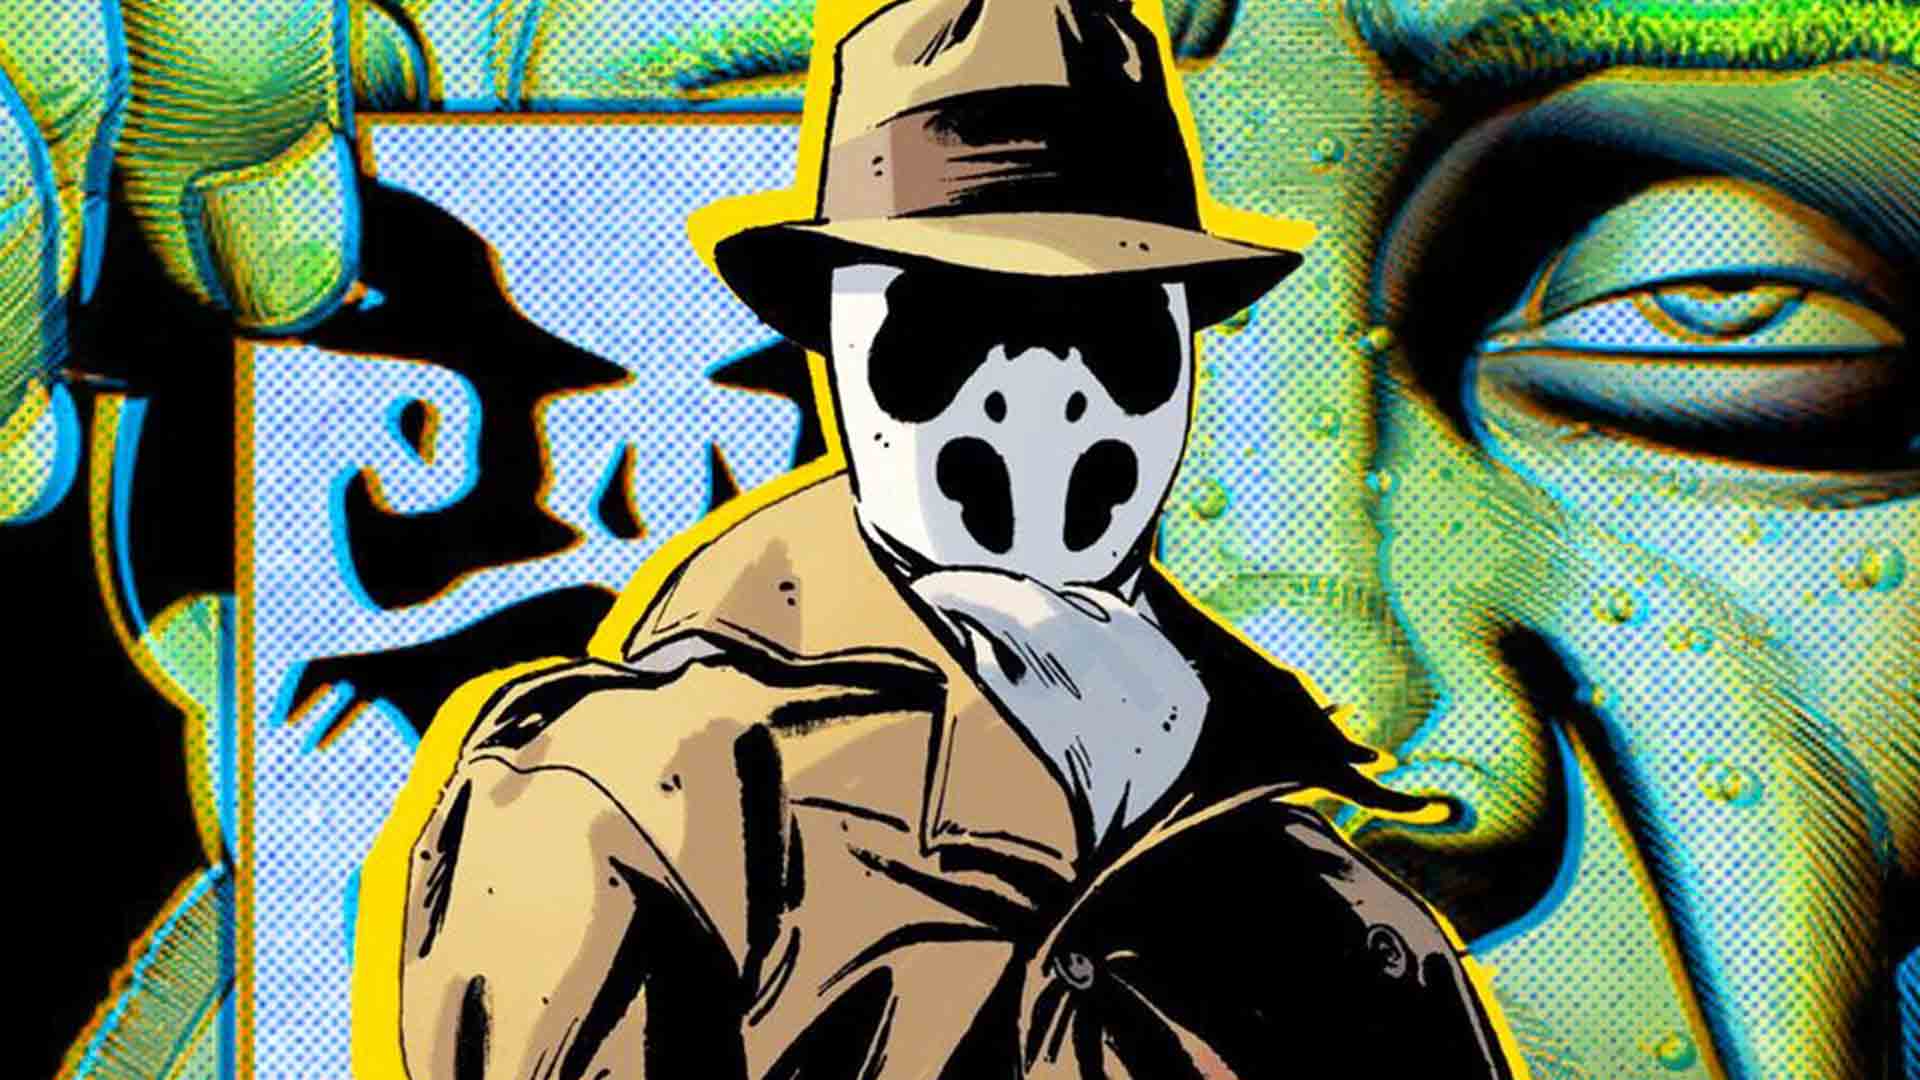 جزئیات بیشتری درباره هویت رورشاک در سری کتاب کمیک Rorschach مشخص شد